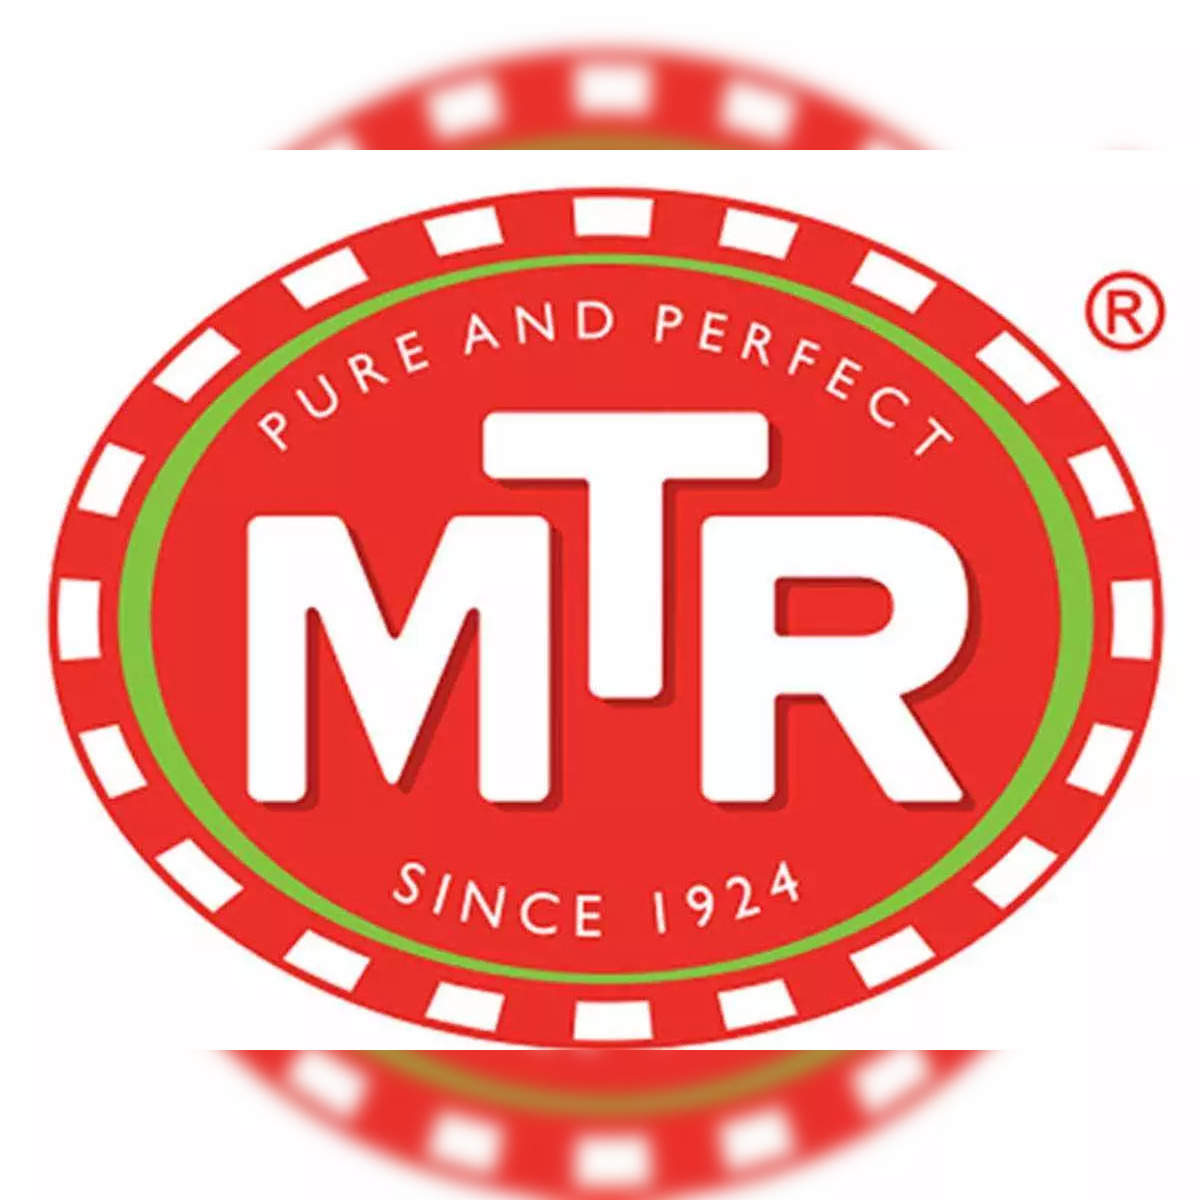 Mtr letter logo design on black background Vector Image